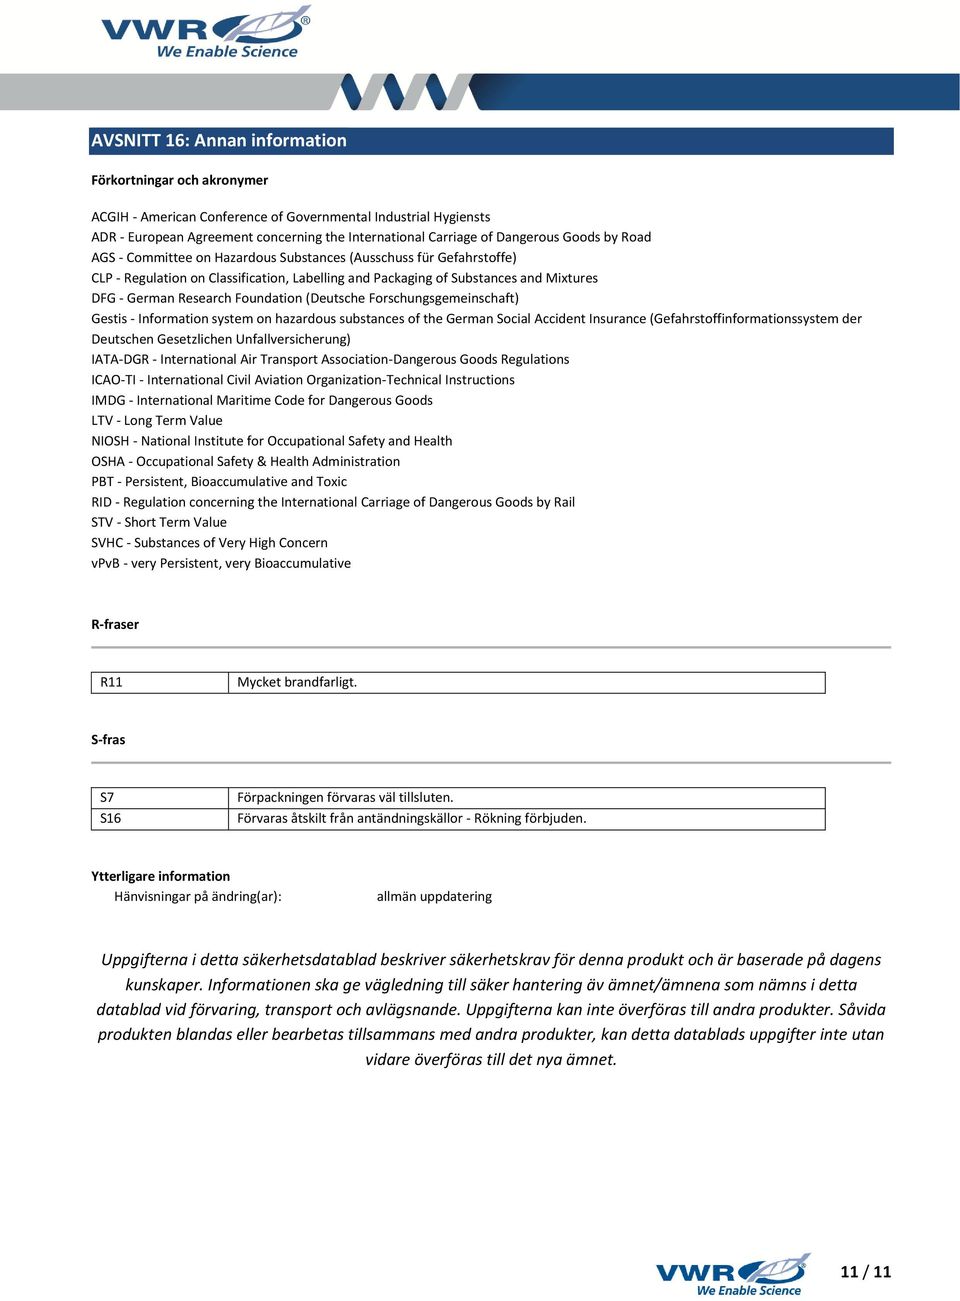 Foundation (Deutsche Forschungsgemeinschaft) Gestis - Information system on hazardous substances of the German Social Accident Insurance (Gefahrstoffinformationssystem der Deutschen Gesetzlichen